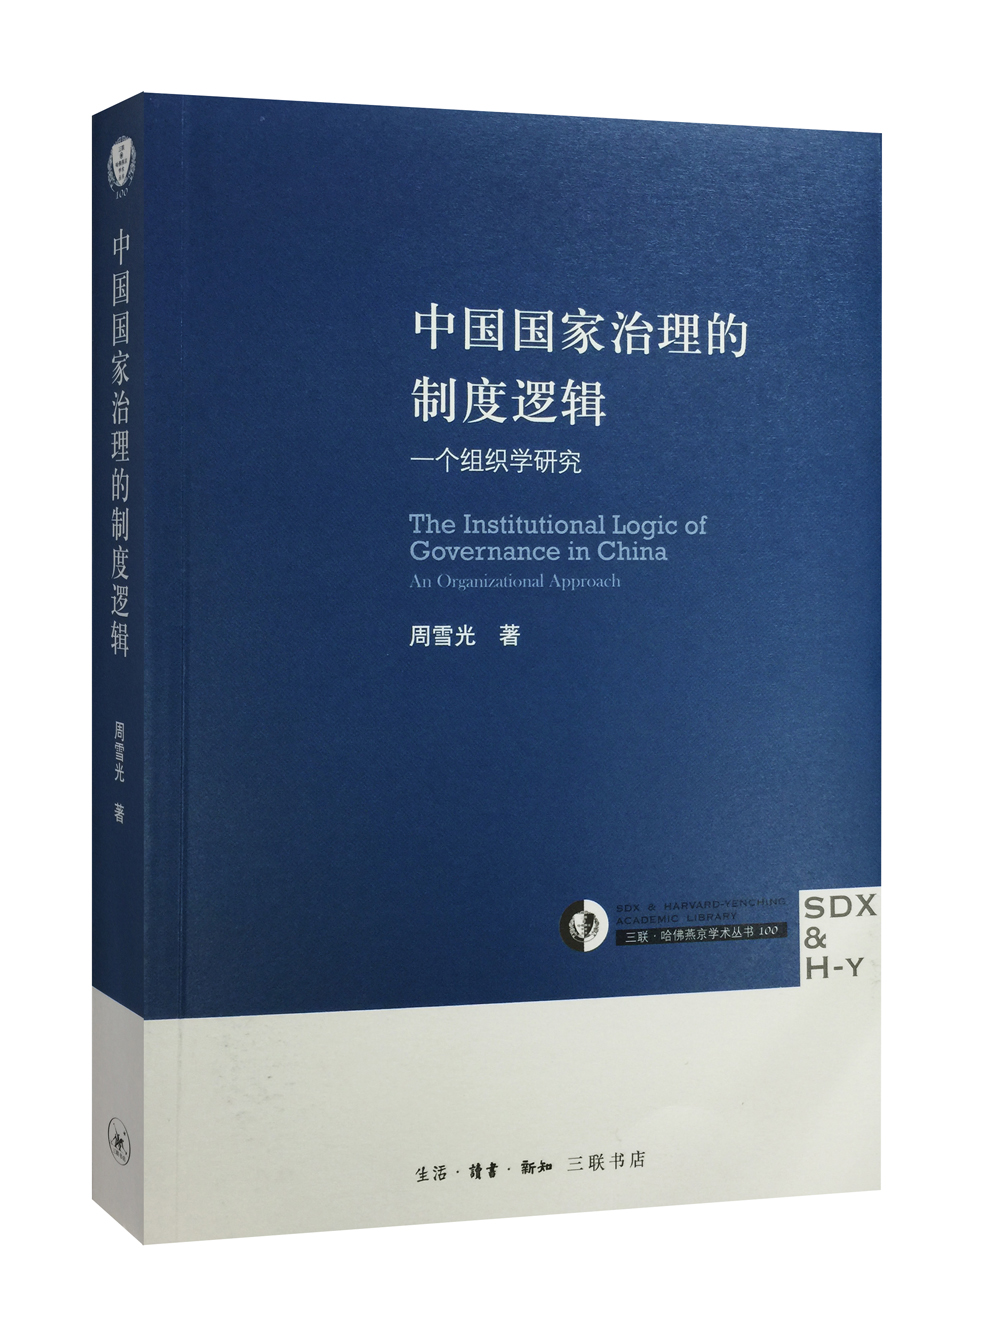 三联哈佛燕京学术丛书 中国国家治理的制度逻辑：一个组织学研究